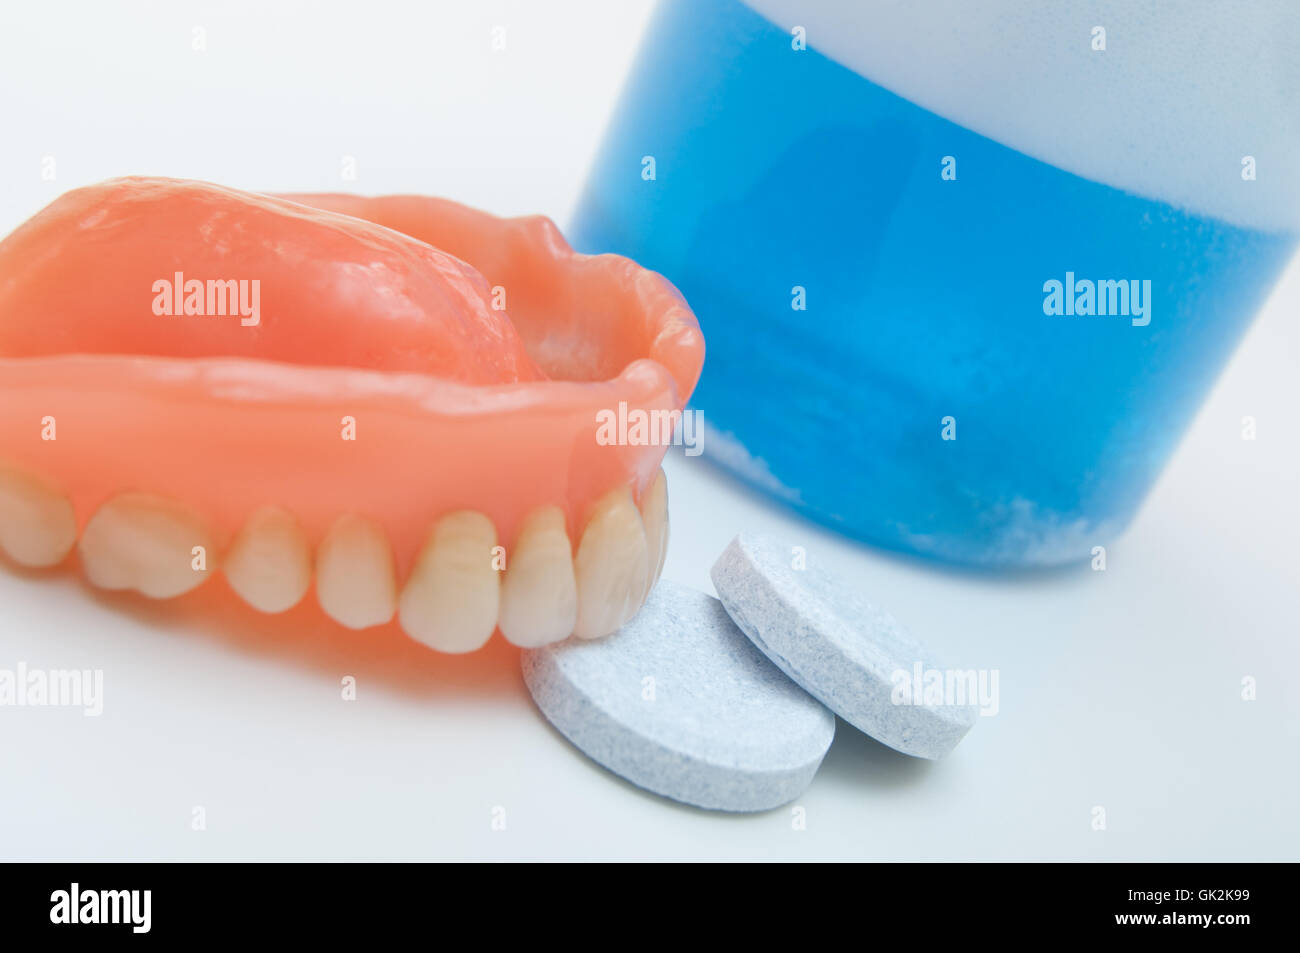 maxillary dentition Stock Photo